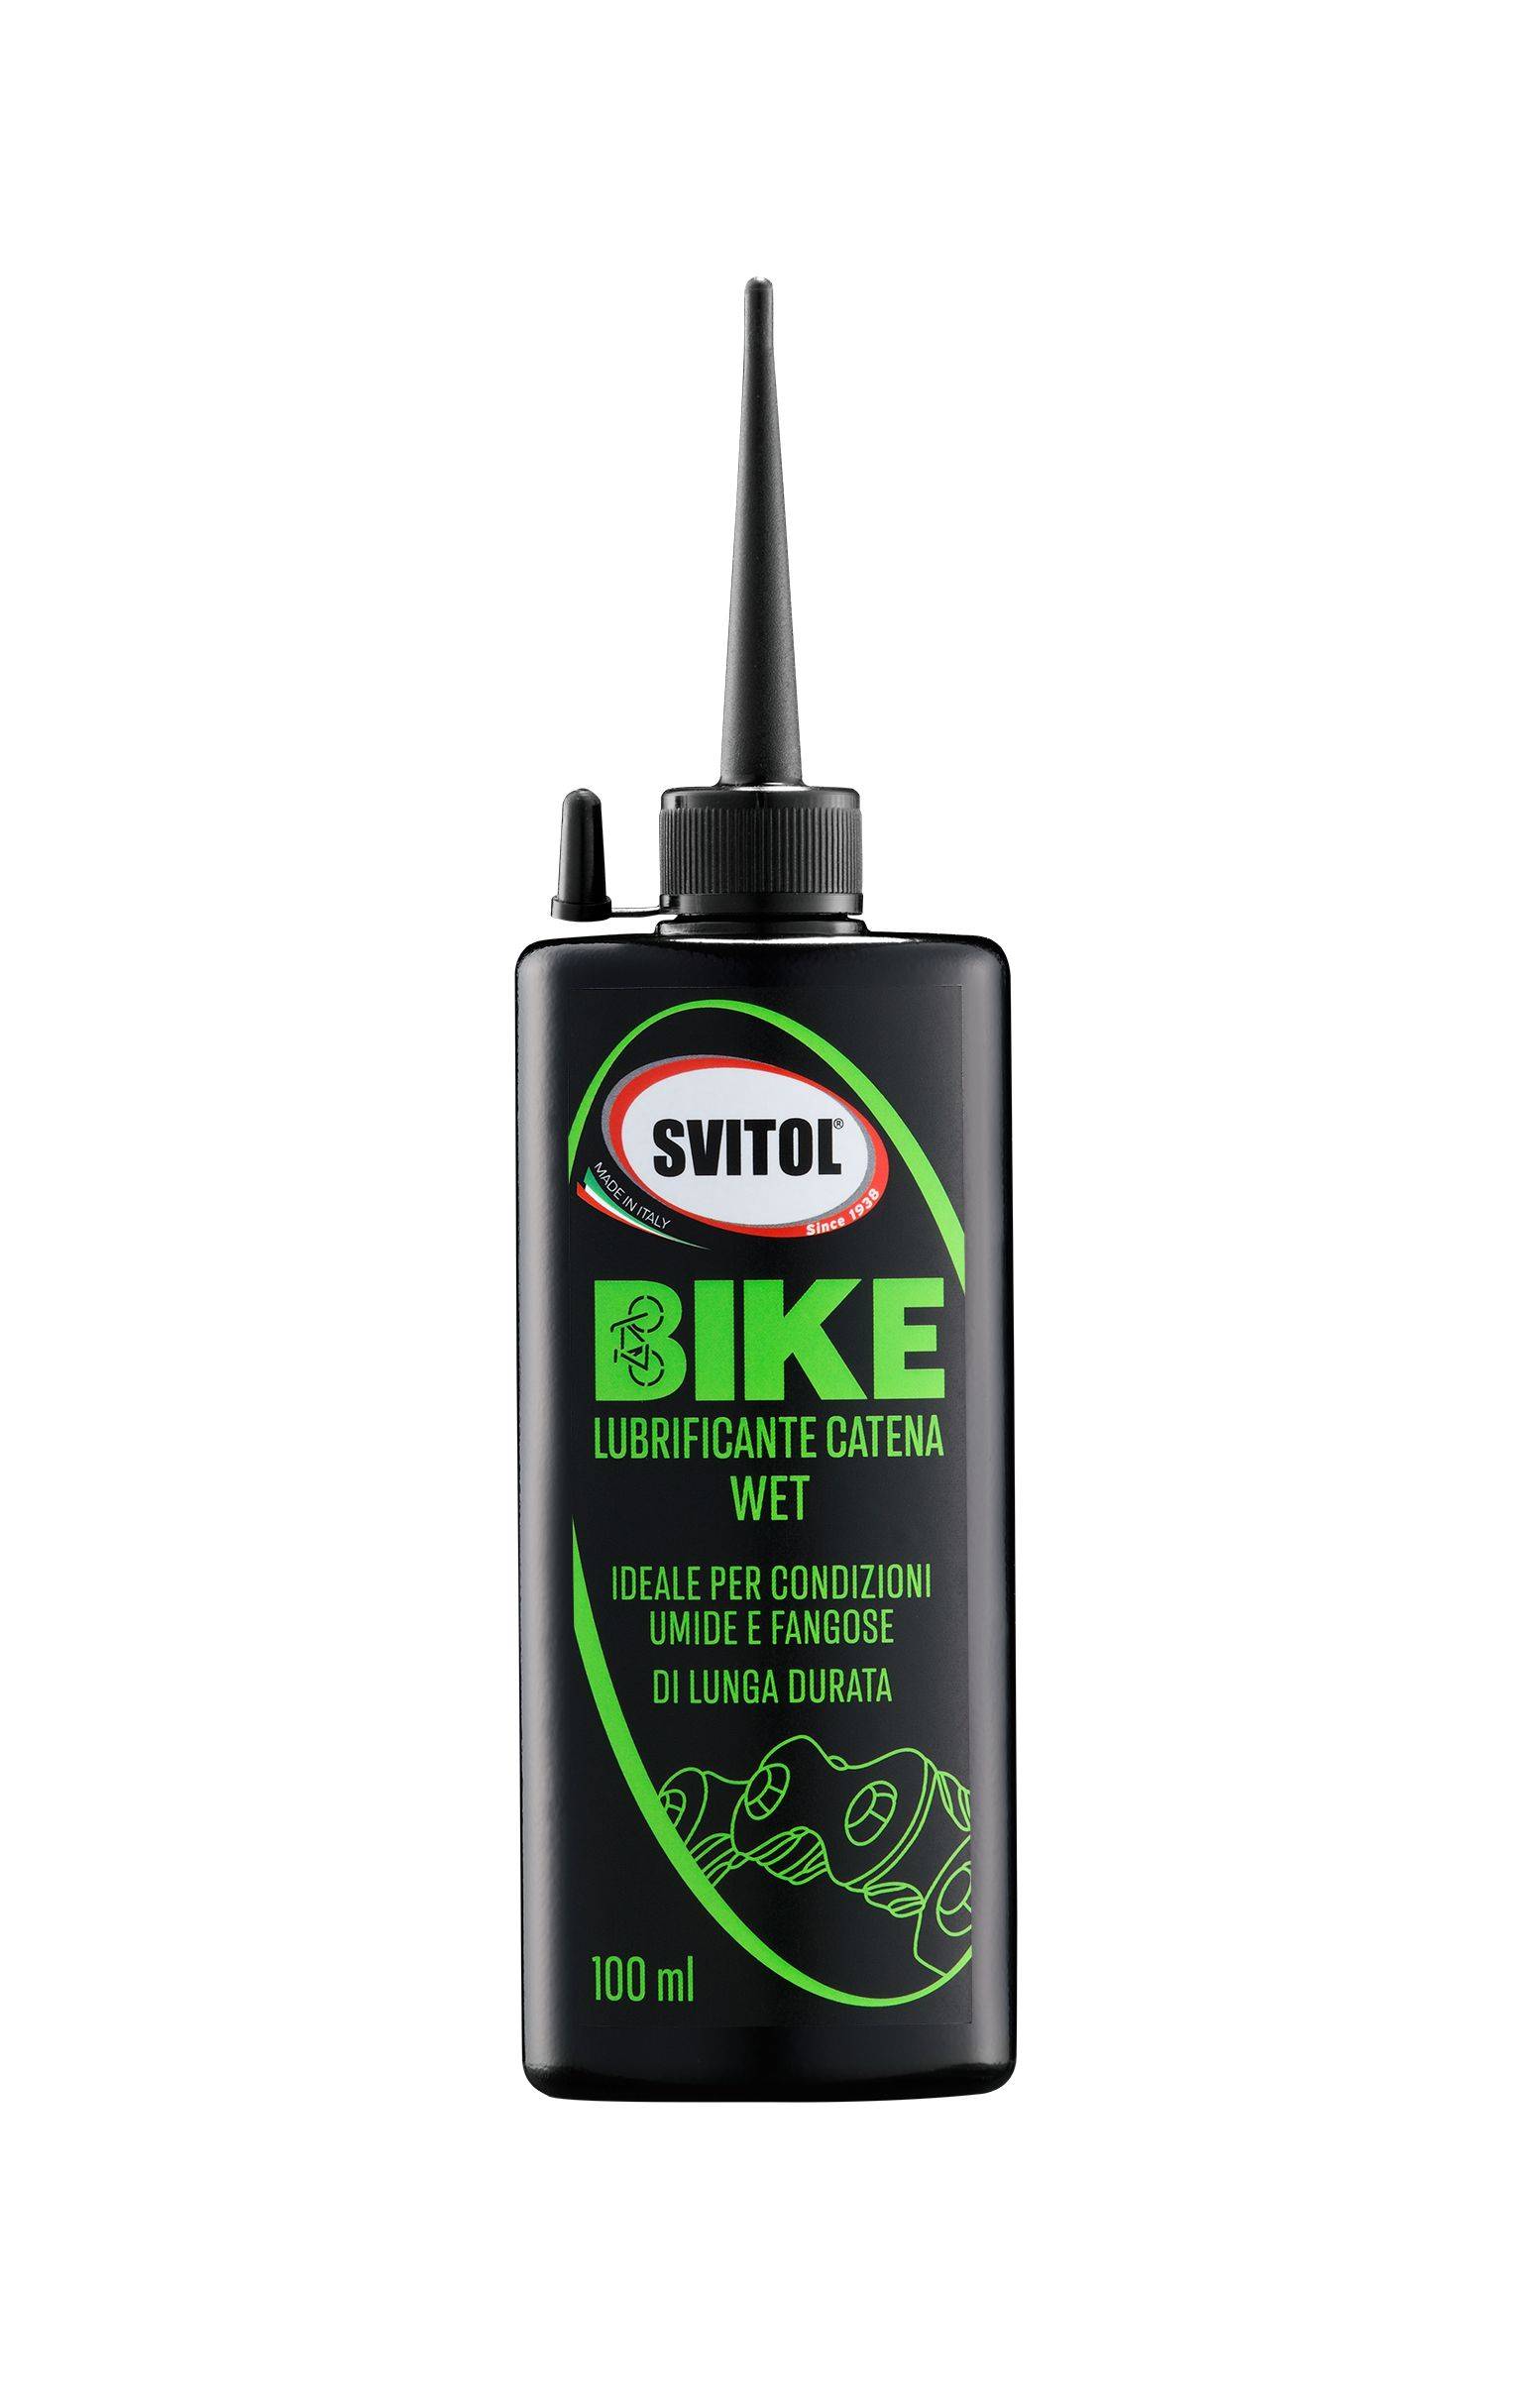 Svitol Bike – Lubrificante catena wet per condizioni umide 100 ml